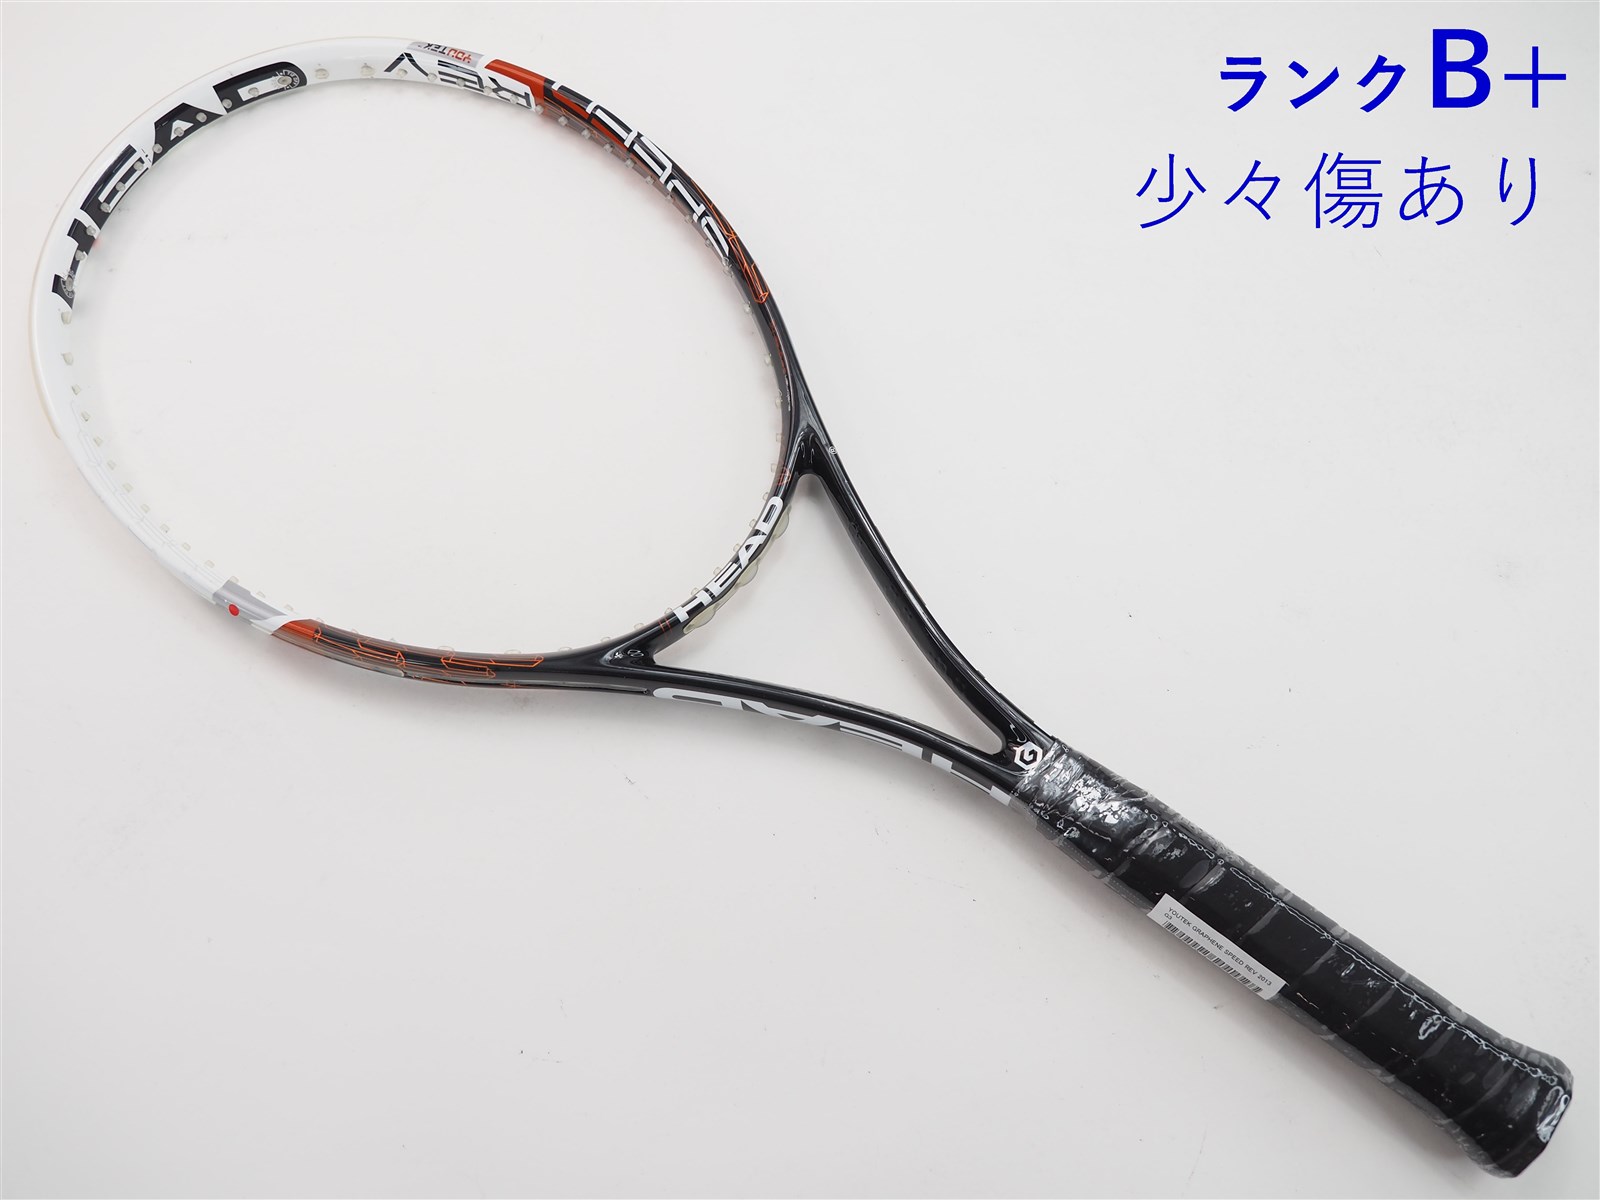 テニスラケット ヘッド ユーテック グラフィン スピード レフ 2013年モデル (G1)HEAD YOUTEK GRAPHENE SPEED REV 2013